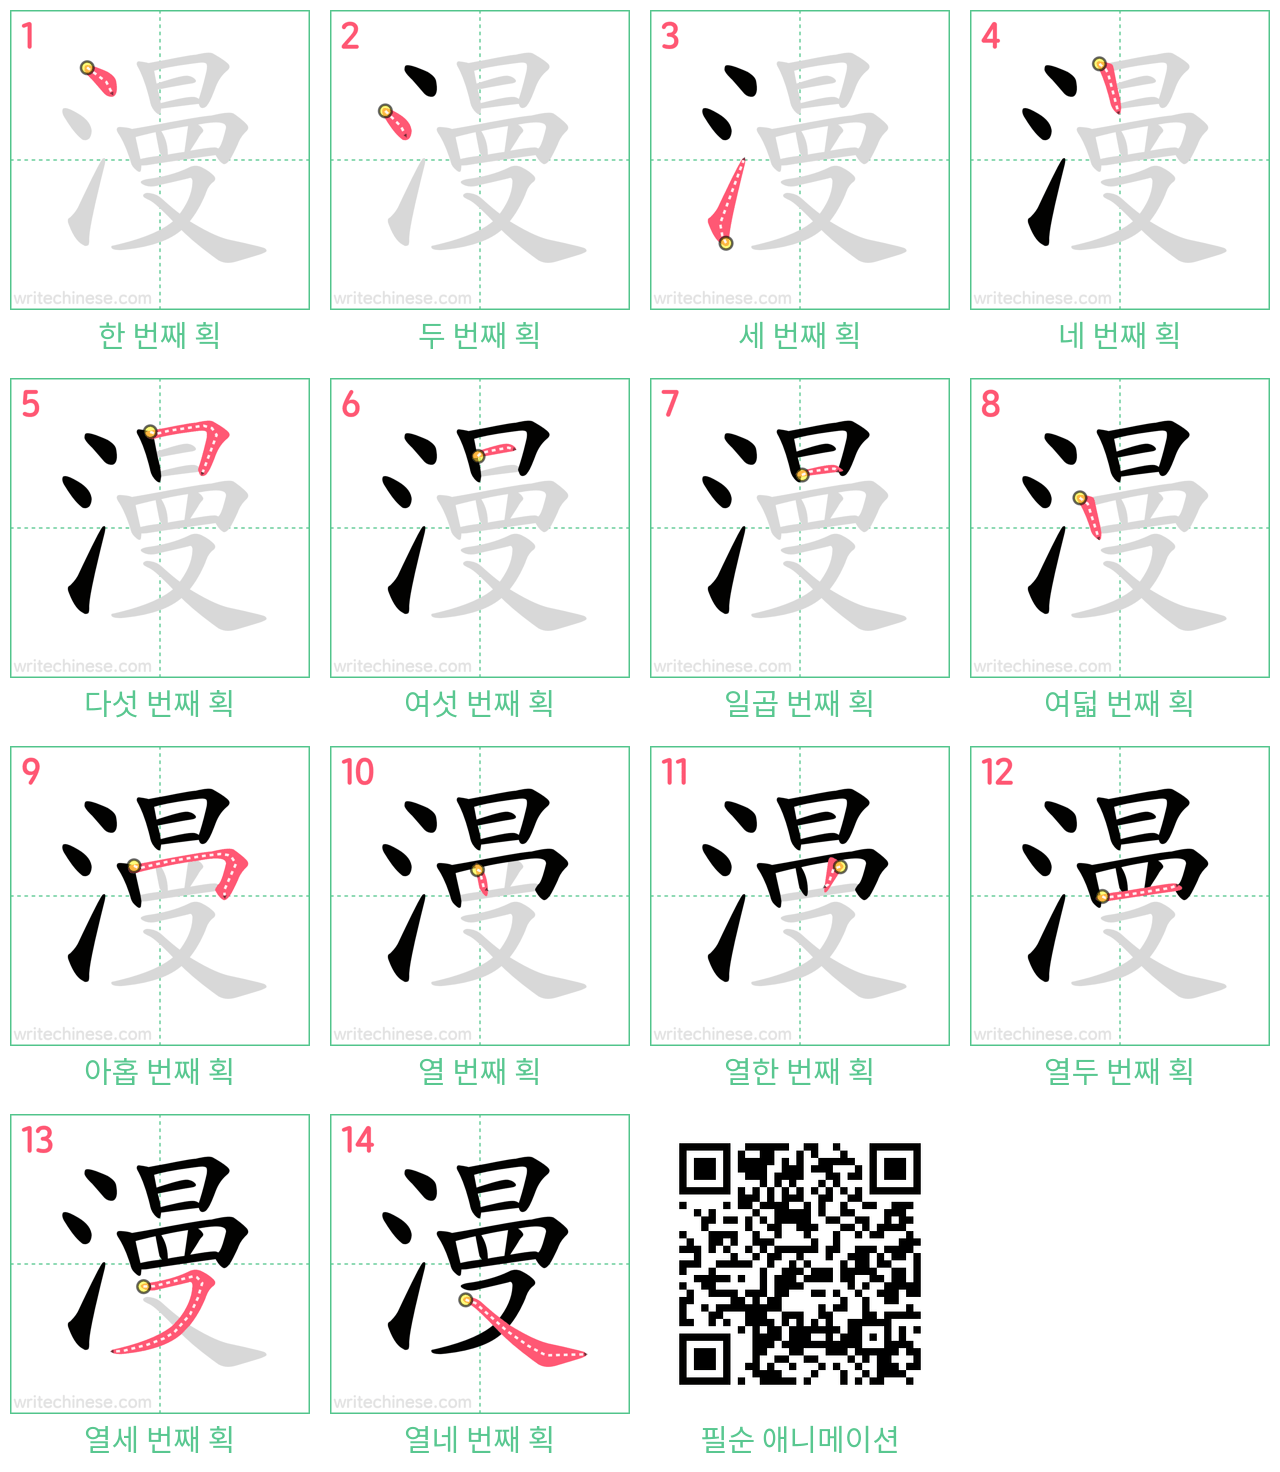 漫 step-by-step stroke order diagrams